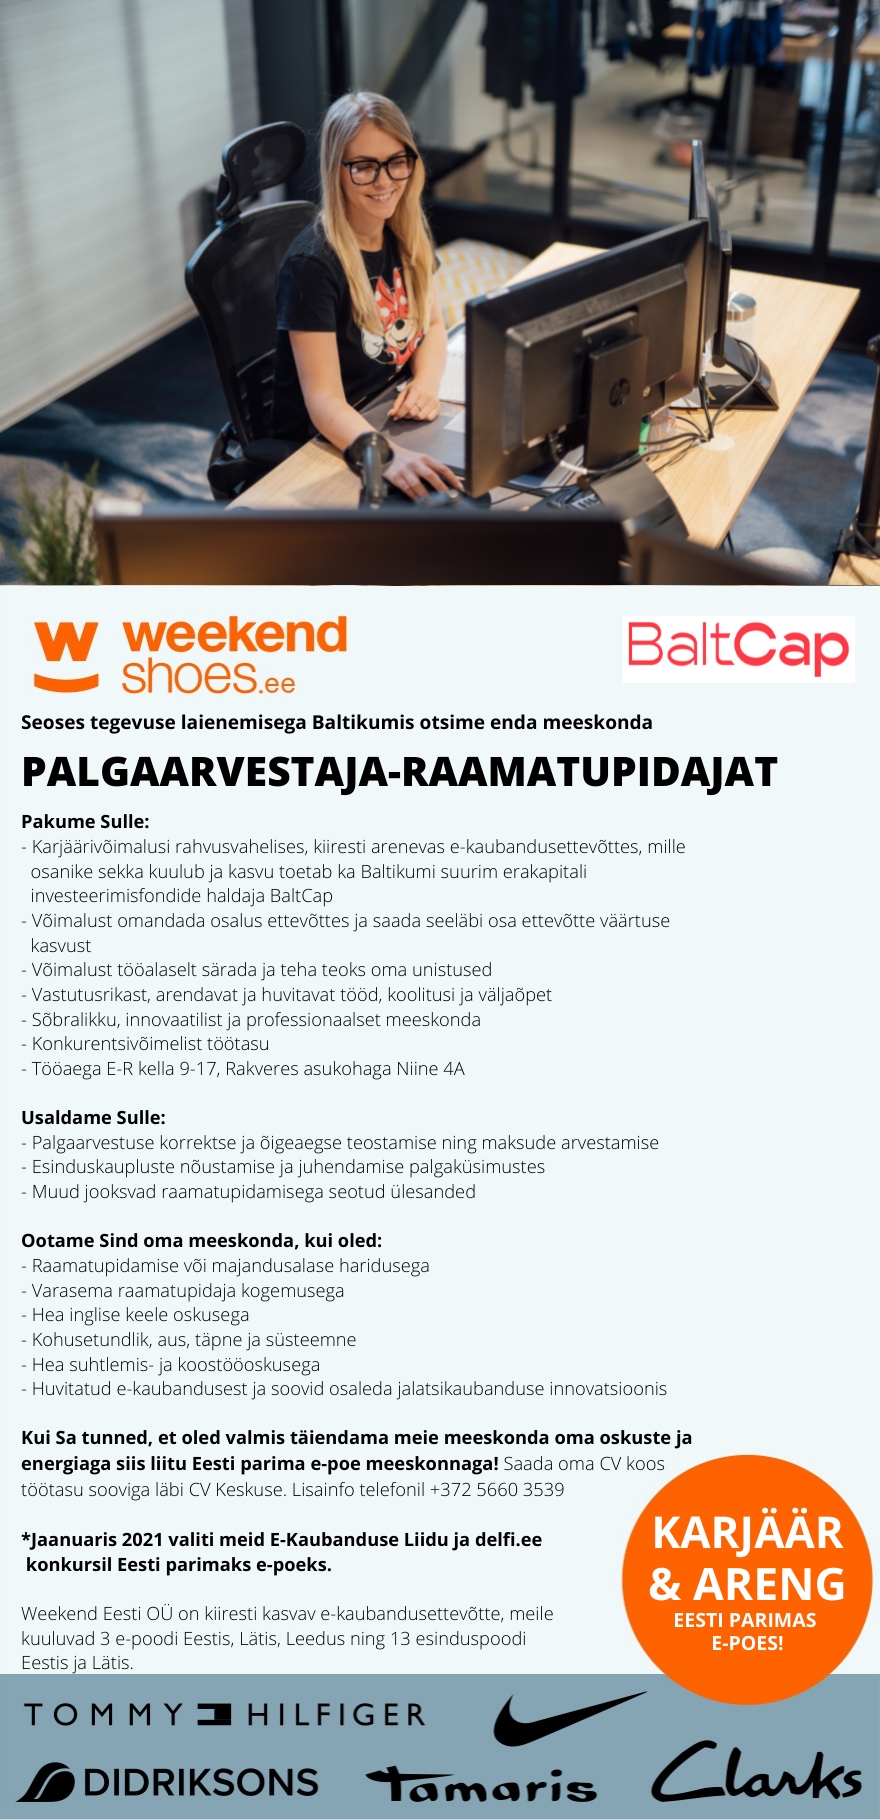 Weekend Eesti OÜ KARJÄÄR & ARENG - PALGAARVESTAJA rahvusvahelises e-kaubandus ettevõttes